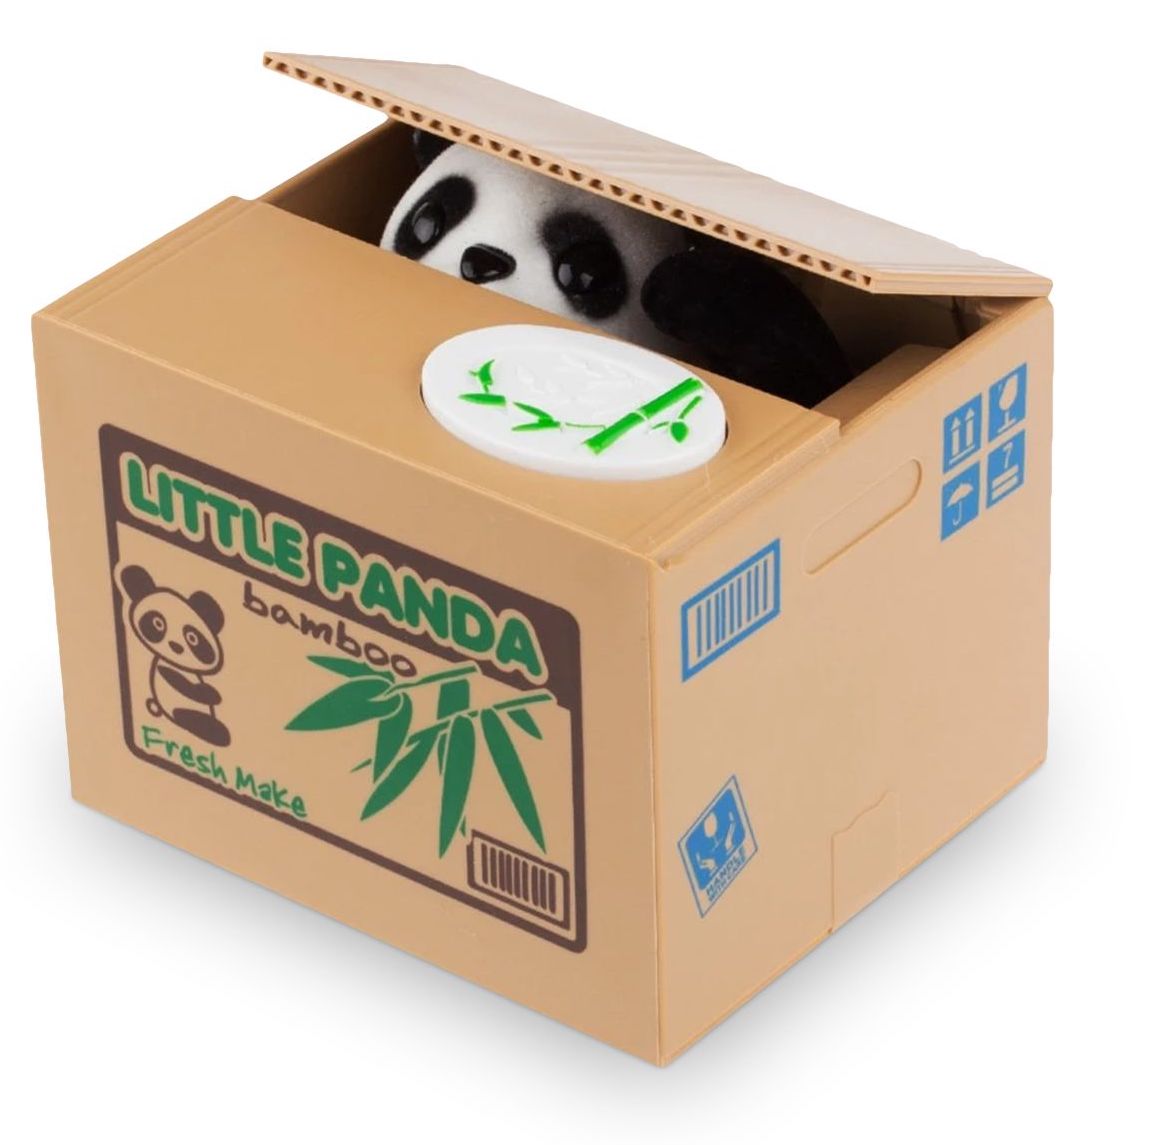 جعبه برای سکه - یک جعبه پول الکترونیکی به شکل پاندا